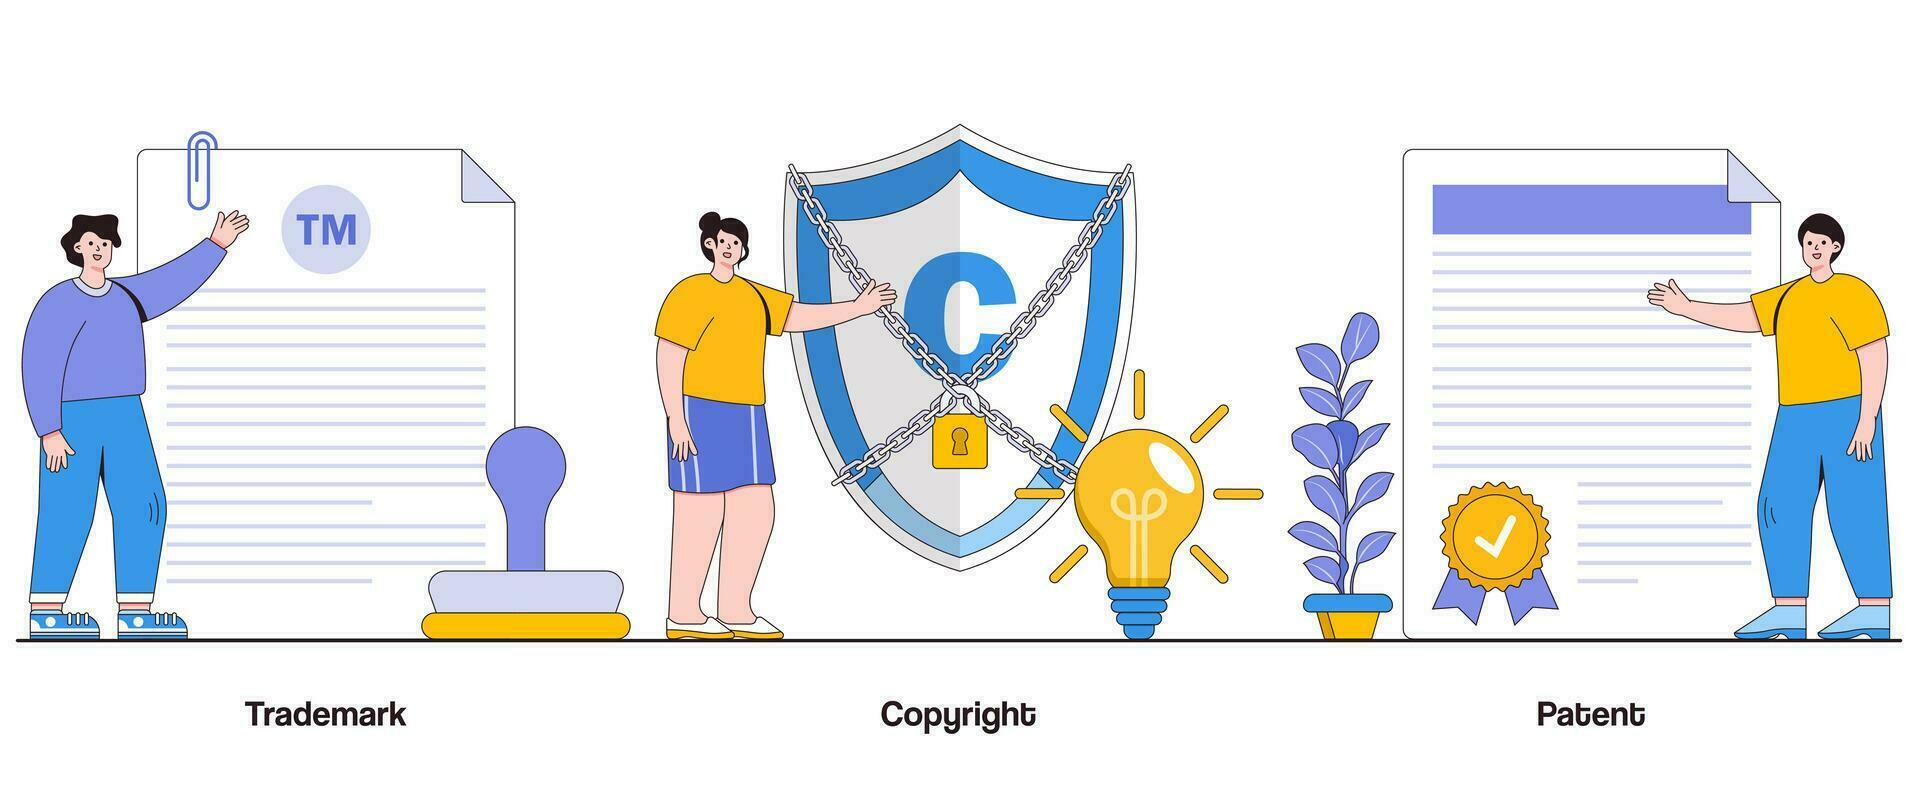 marchio, diritto d'autore, e brevetto concetto con carattere. intellettuale proprietà astratto vettore illustrazione impostare. innovazione, creatività, e protezione metafora